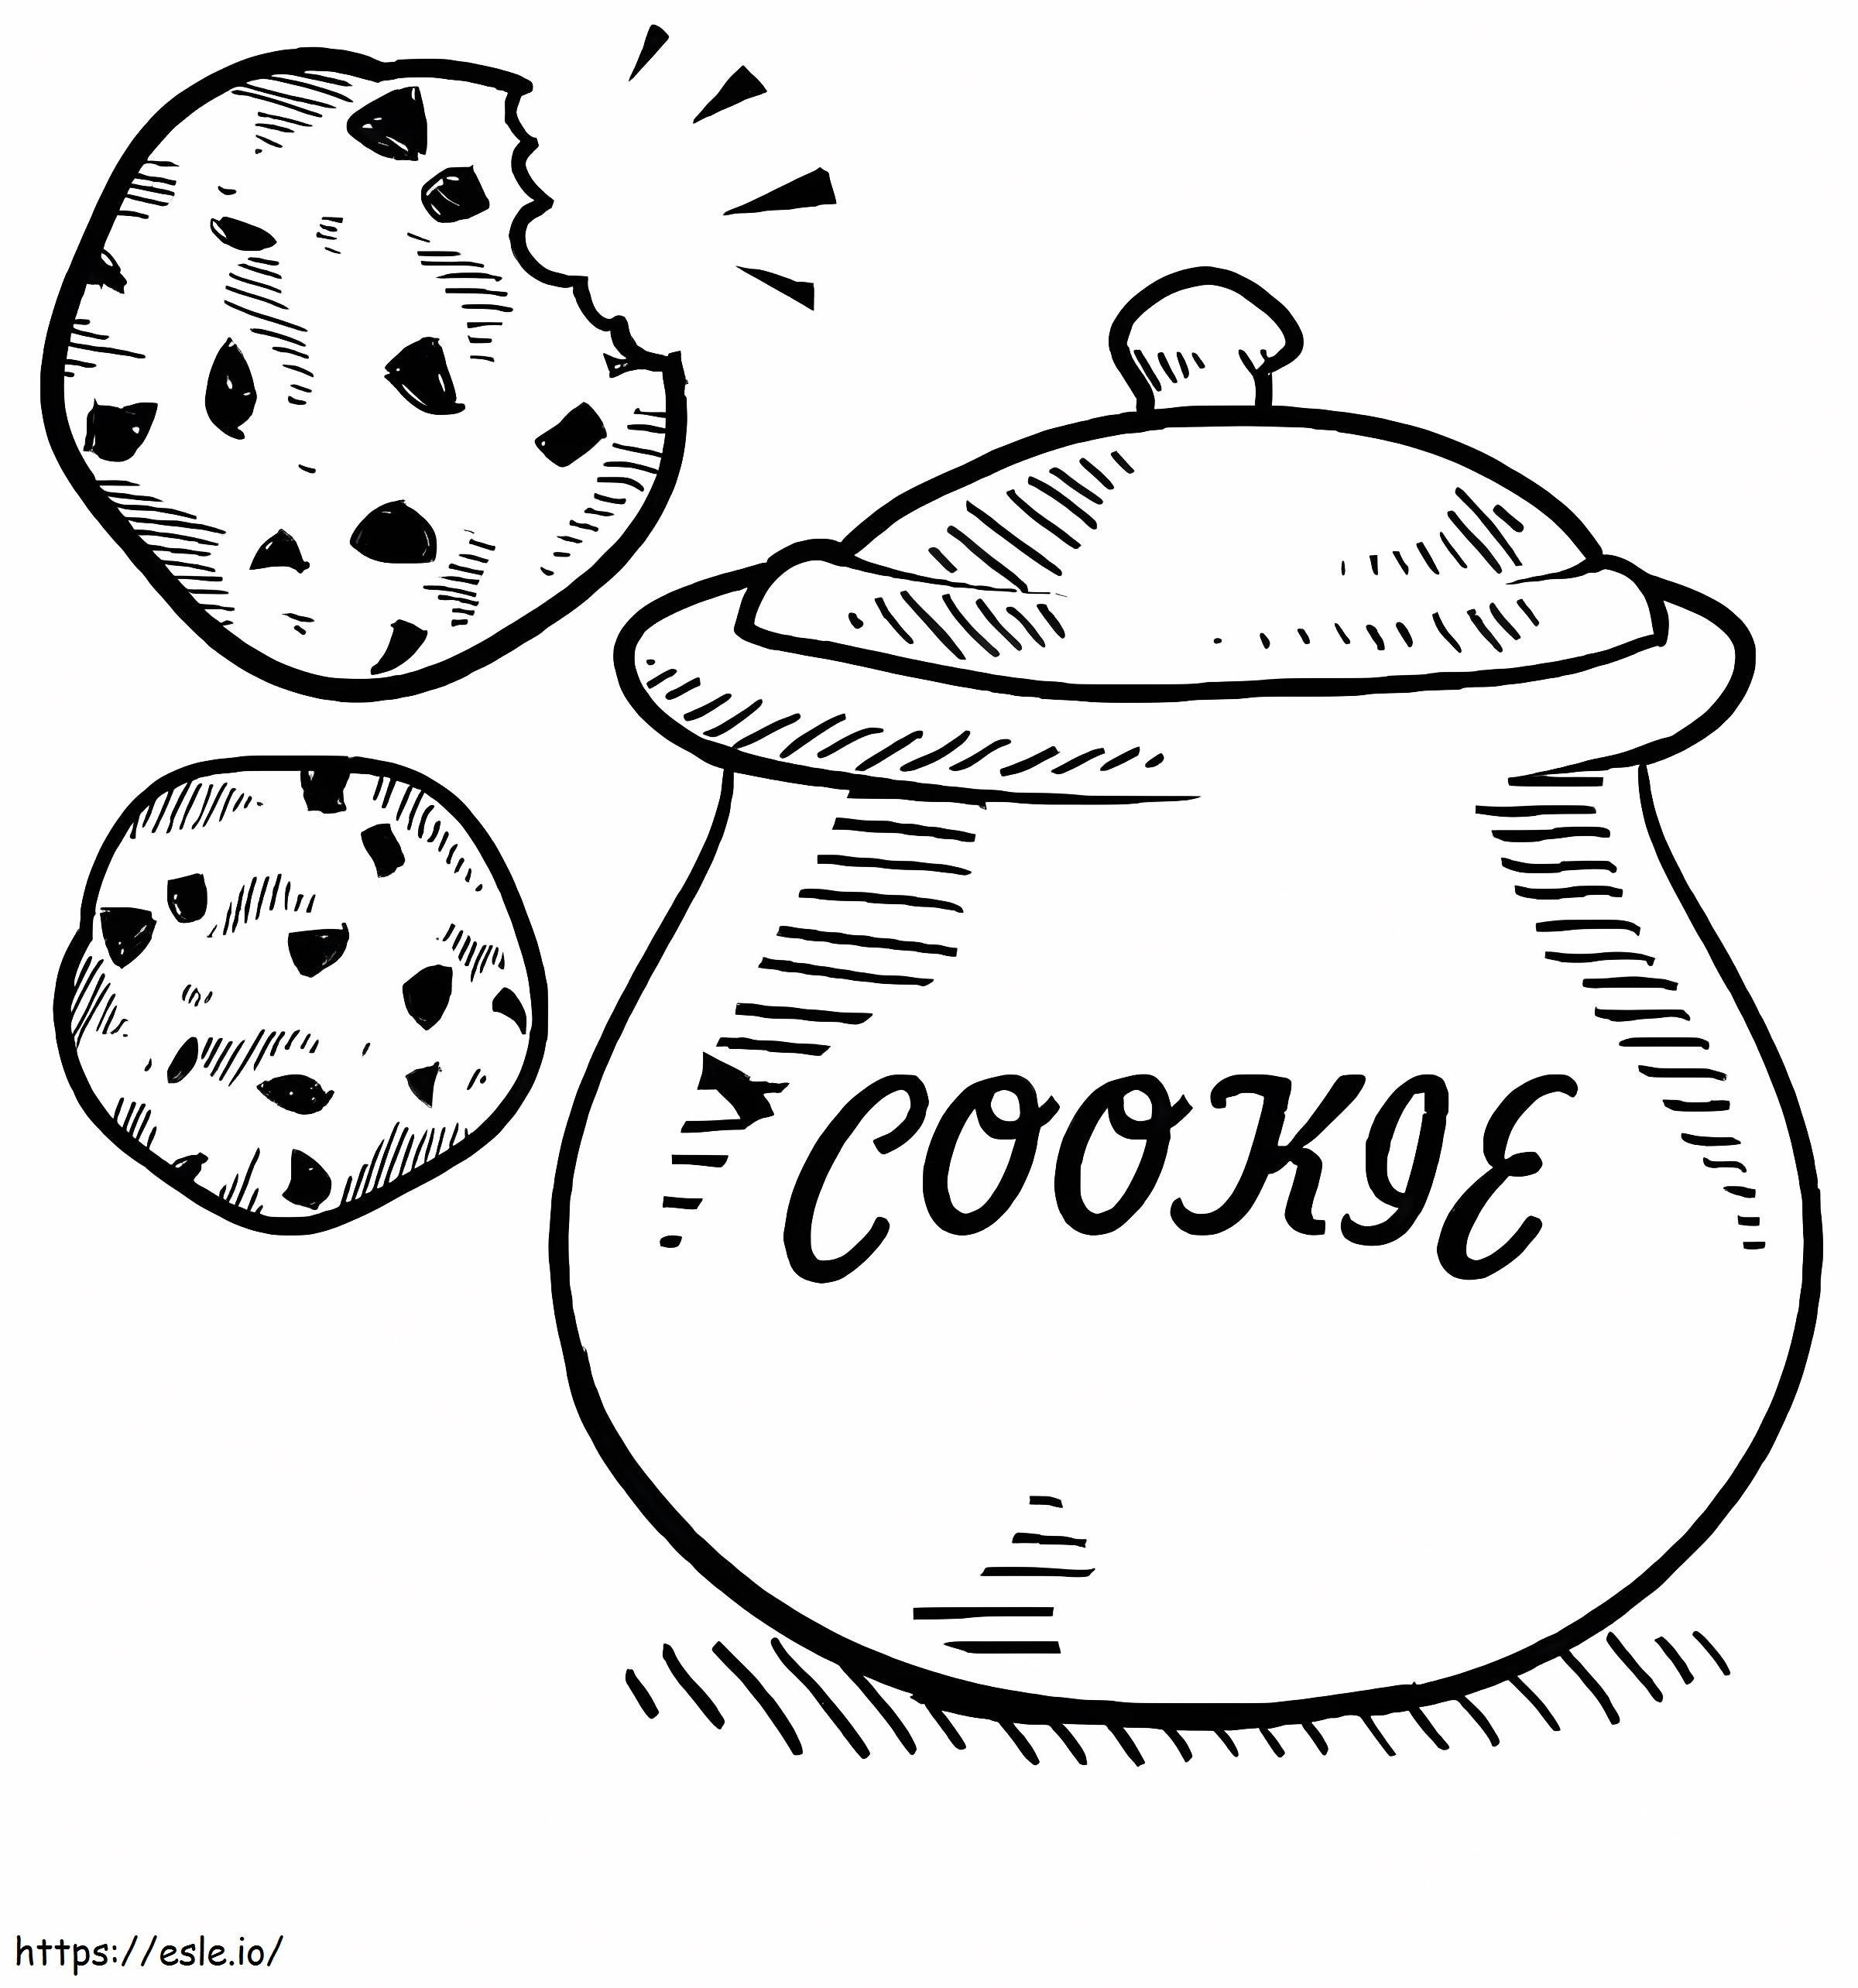 Cookie Jar coloring page